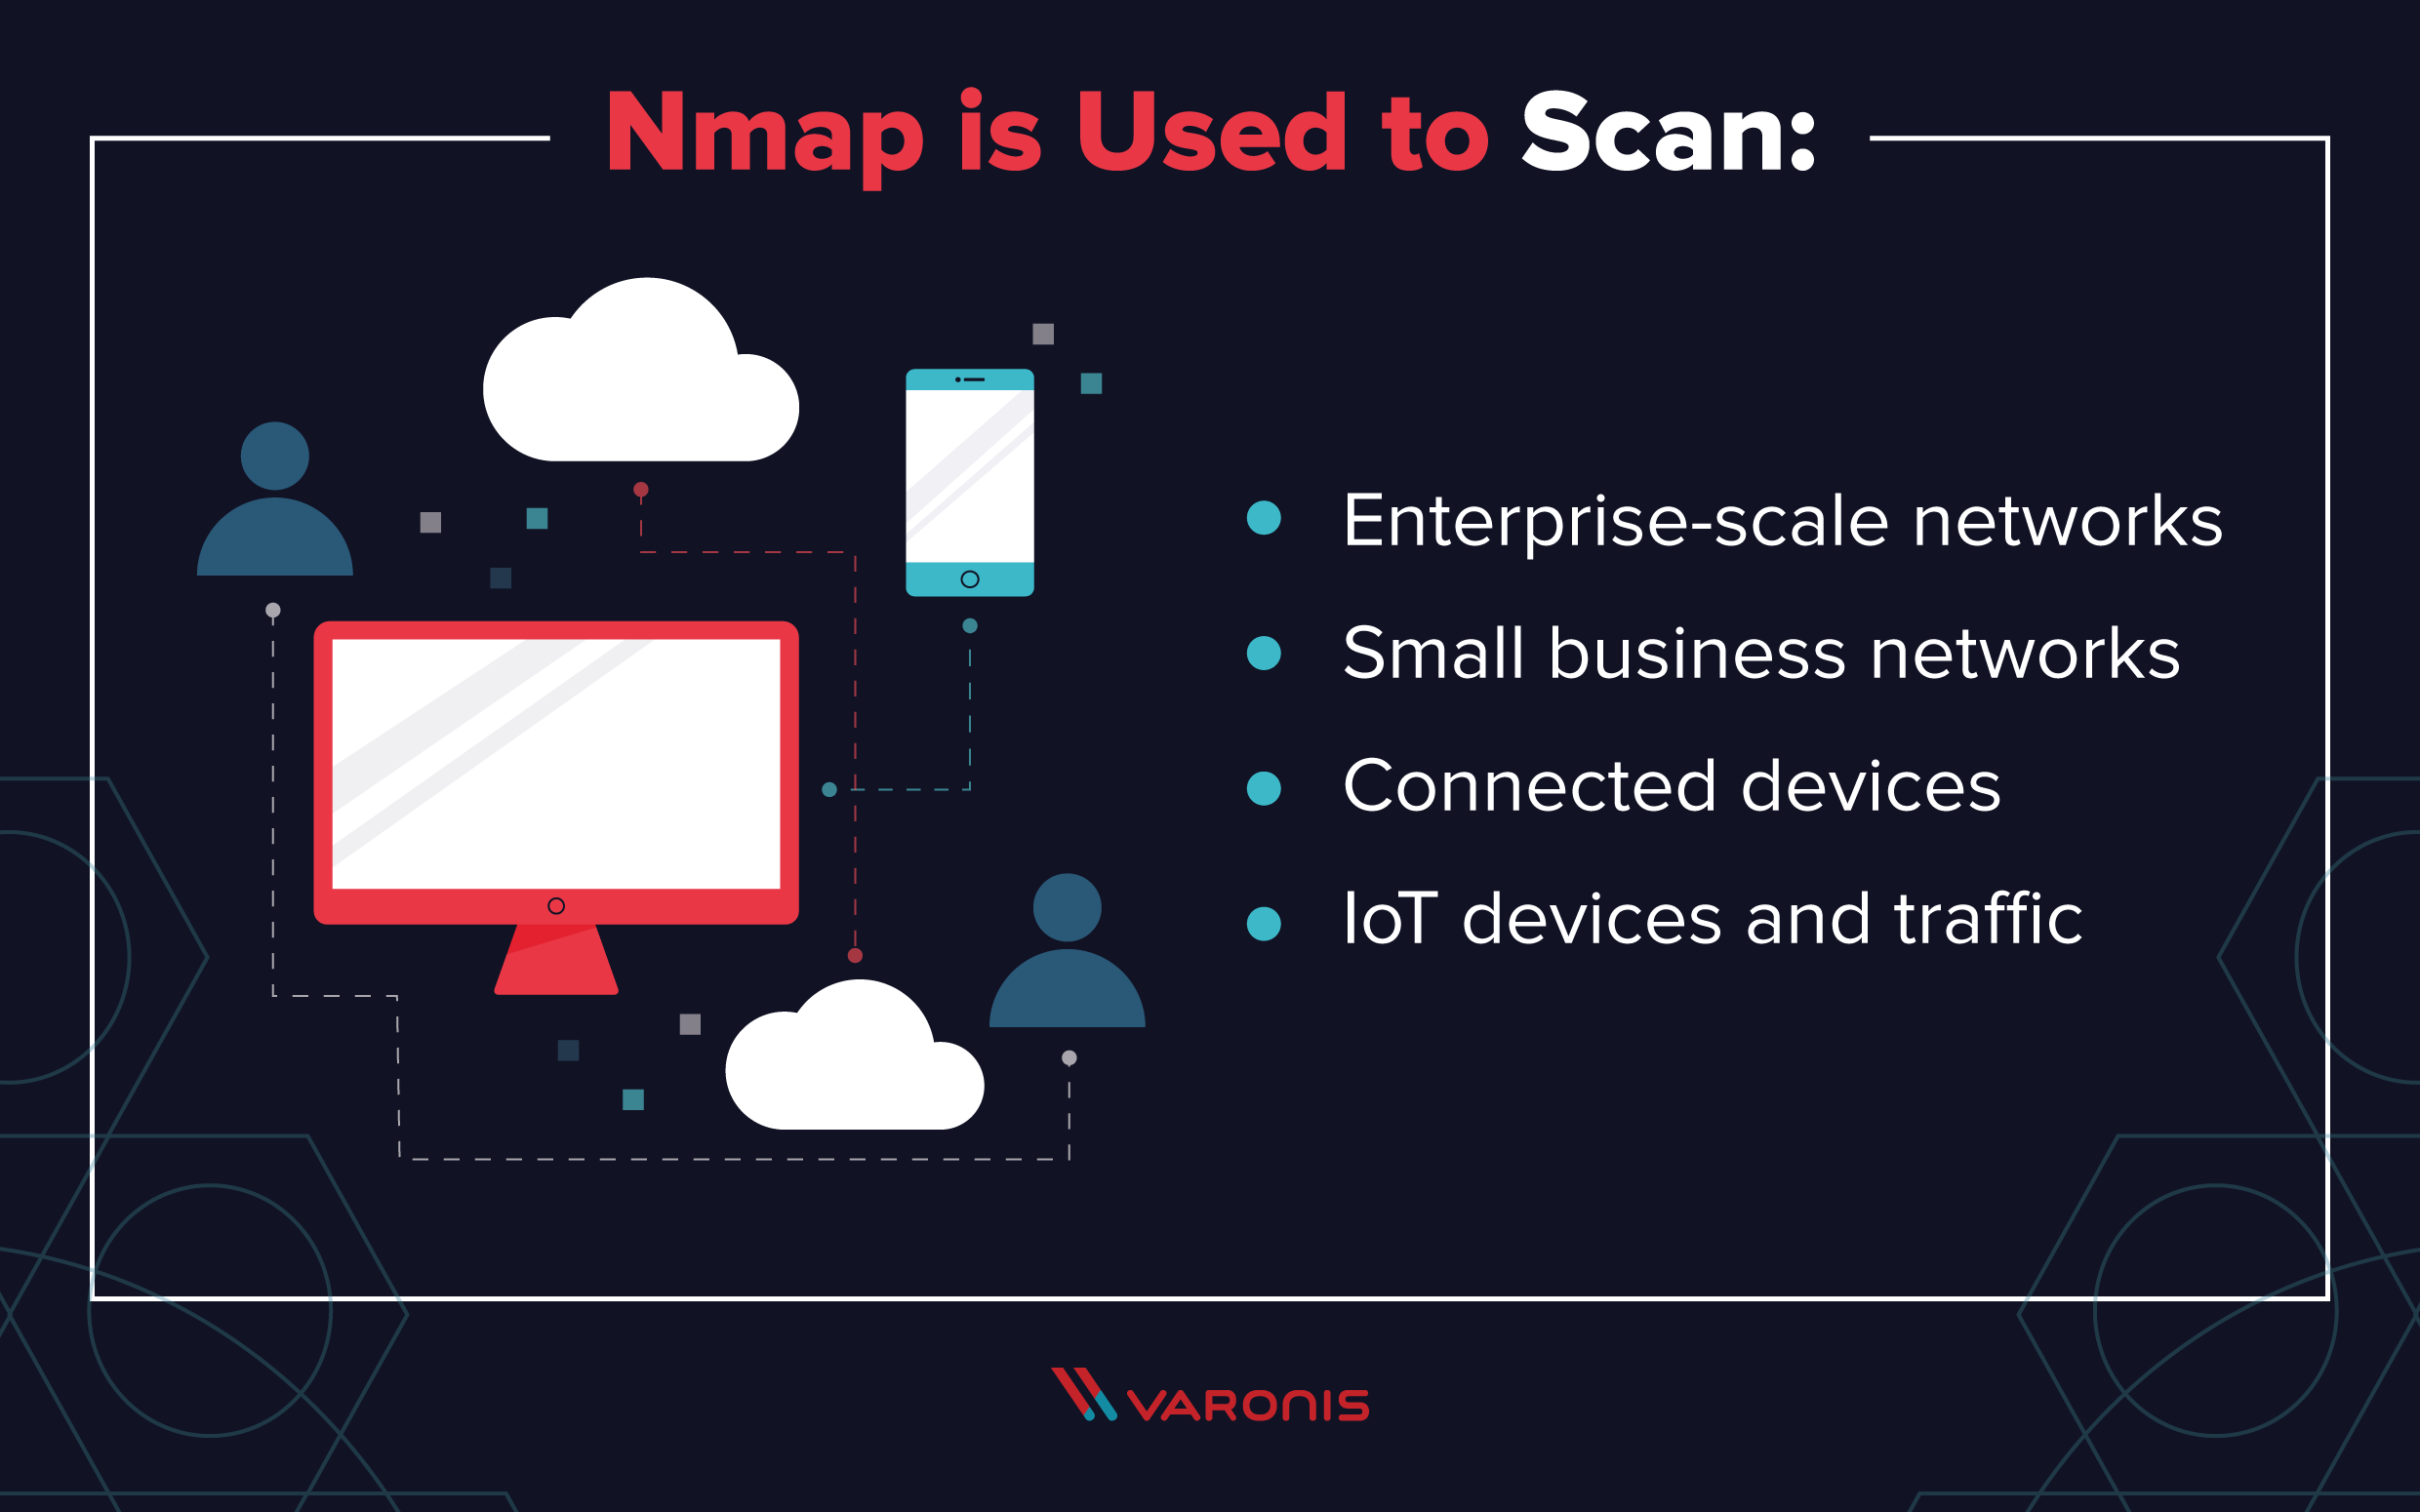 Usos do Nmap, incluindo redes, dispositivos IoT e outros dispositivos